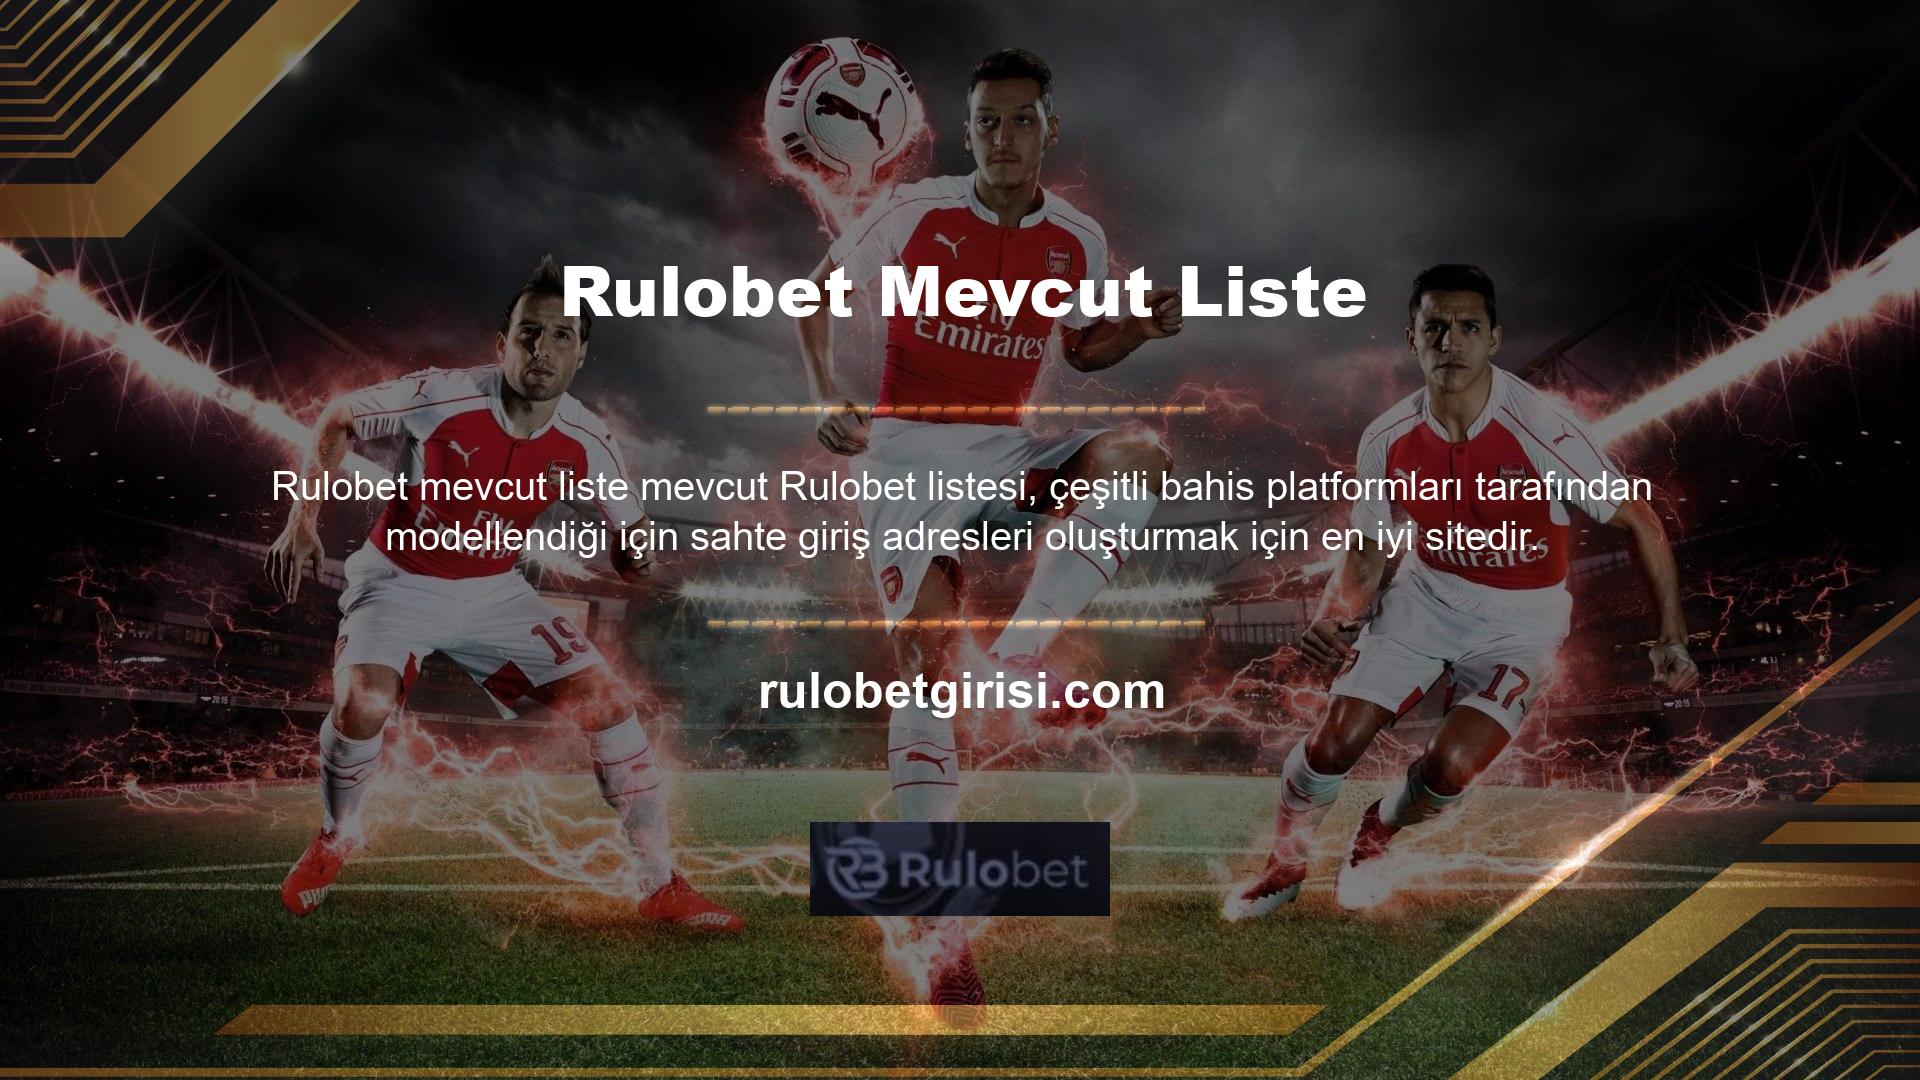 Site üyelerine verilen tavsiyeler arasında Rulobet adresinden en güncel olanından üye olunması tavsiye edilmektedir